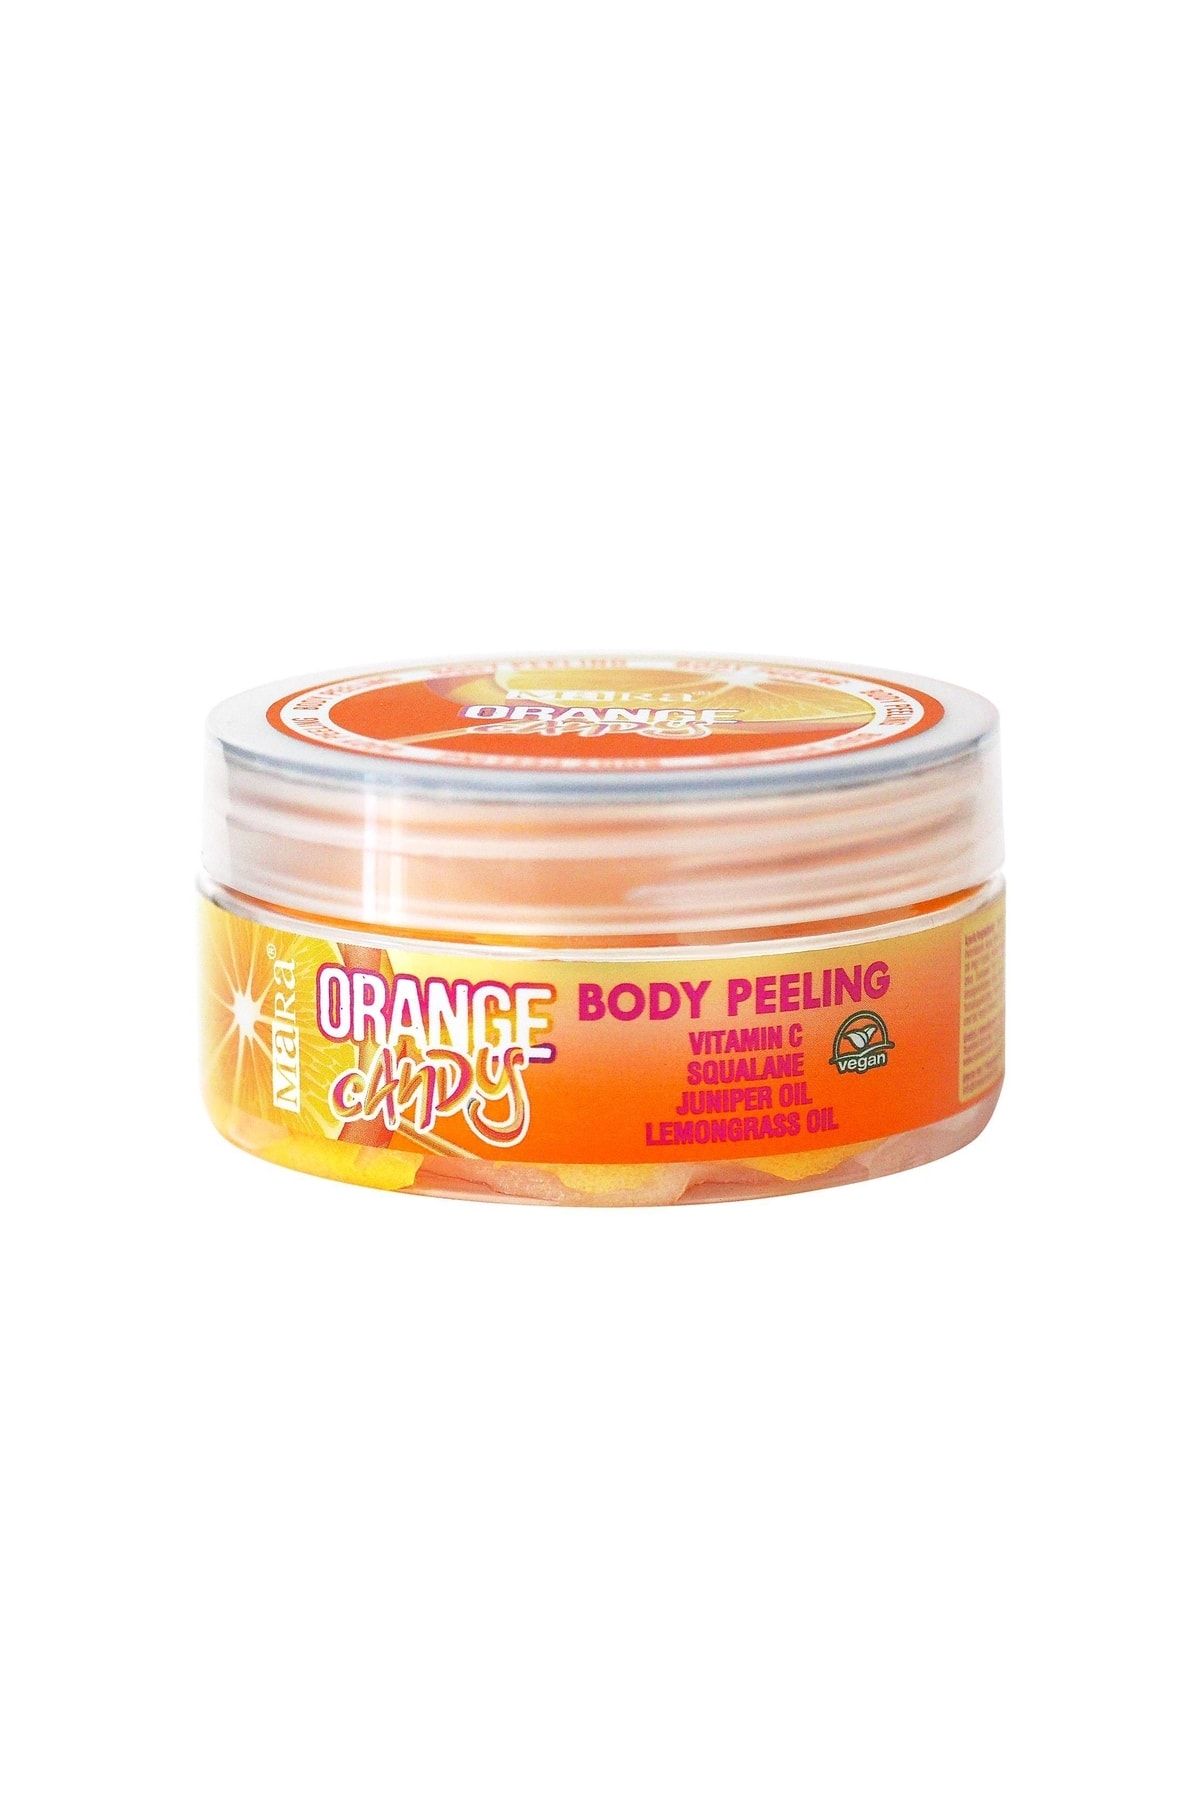 Mara Orange Candy Değerli Yağlar Içeren Portakal Şekeri Vücut Peeling 125gr